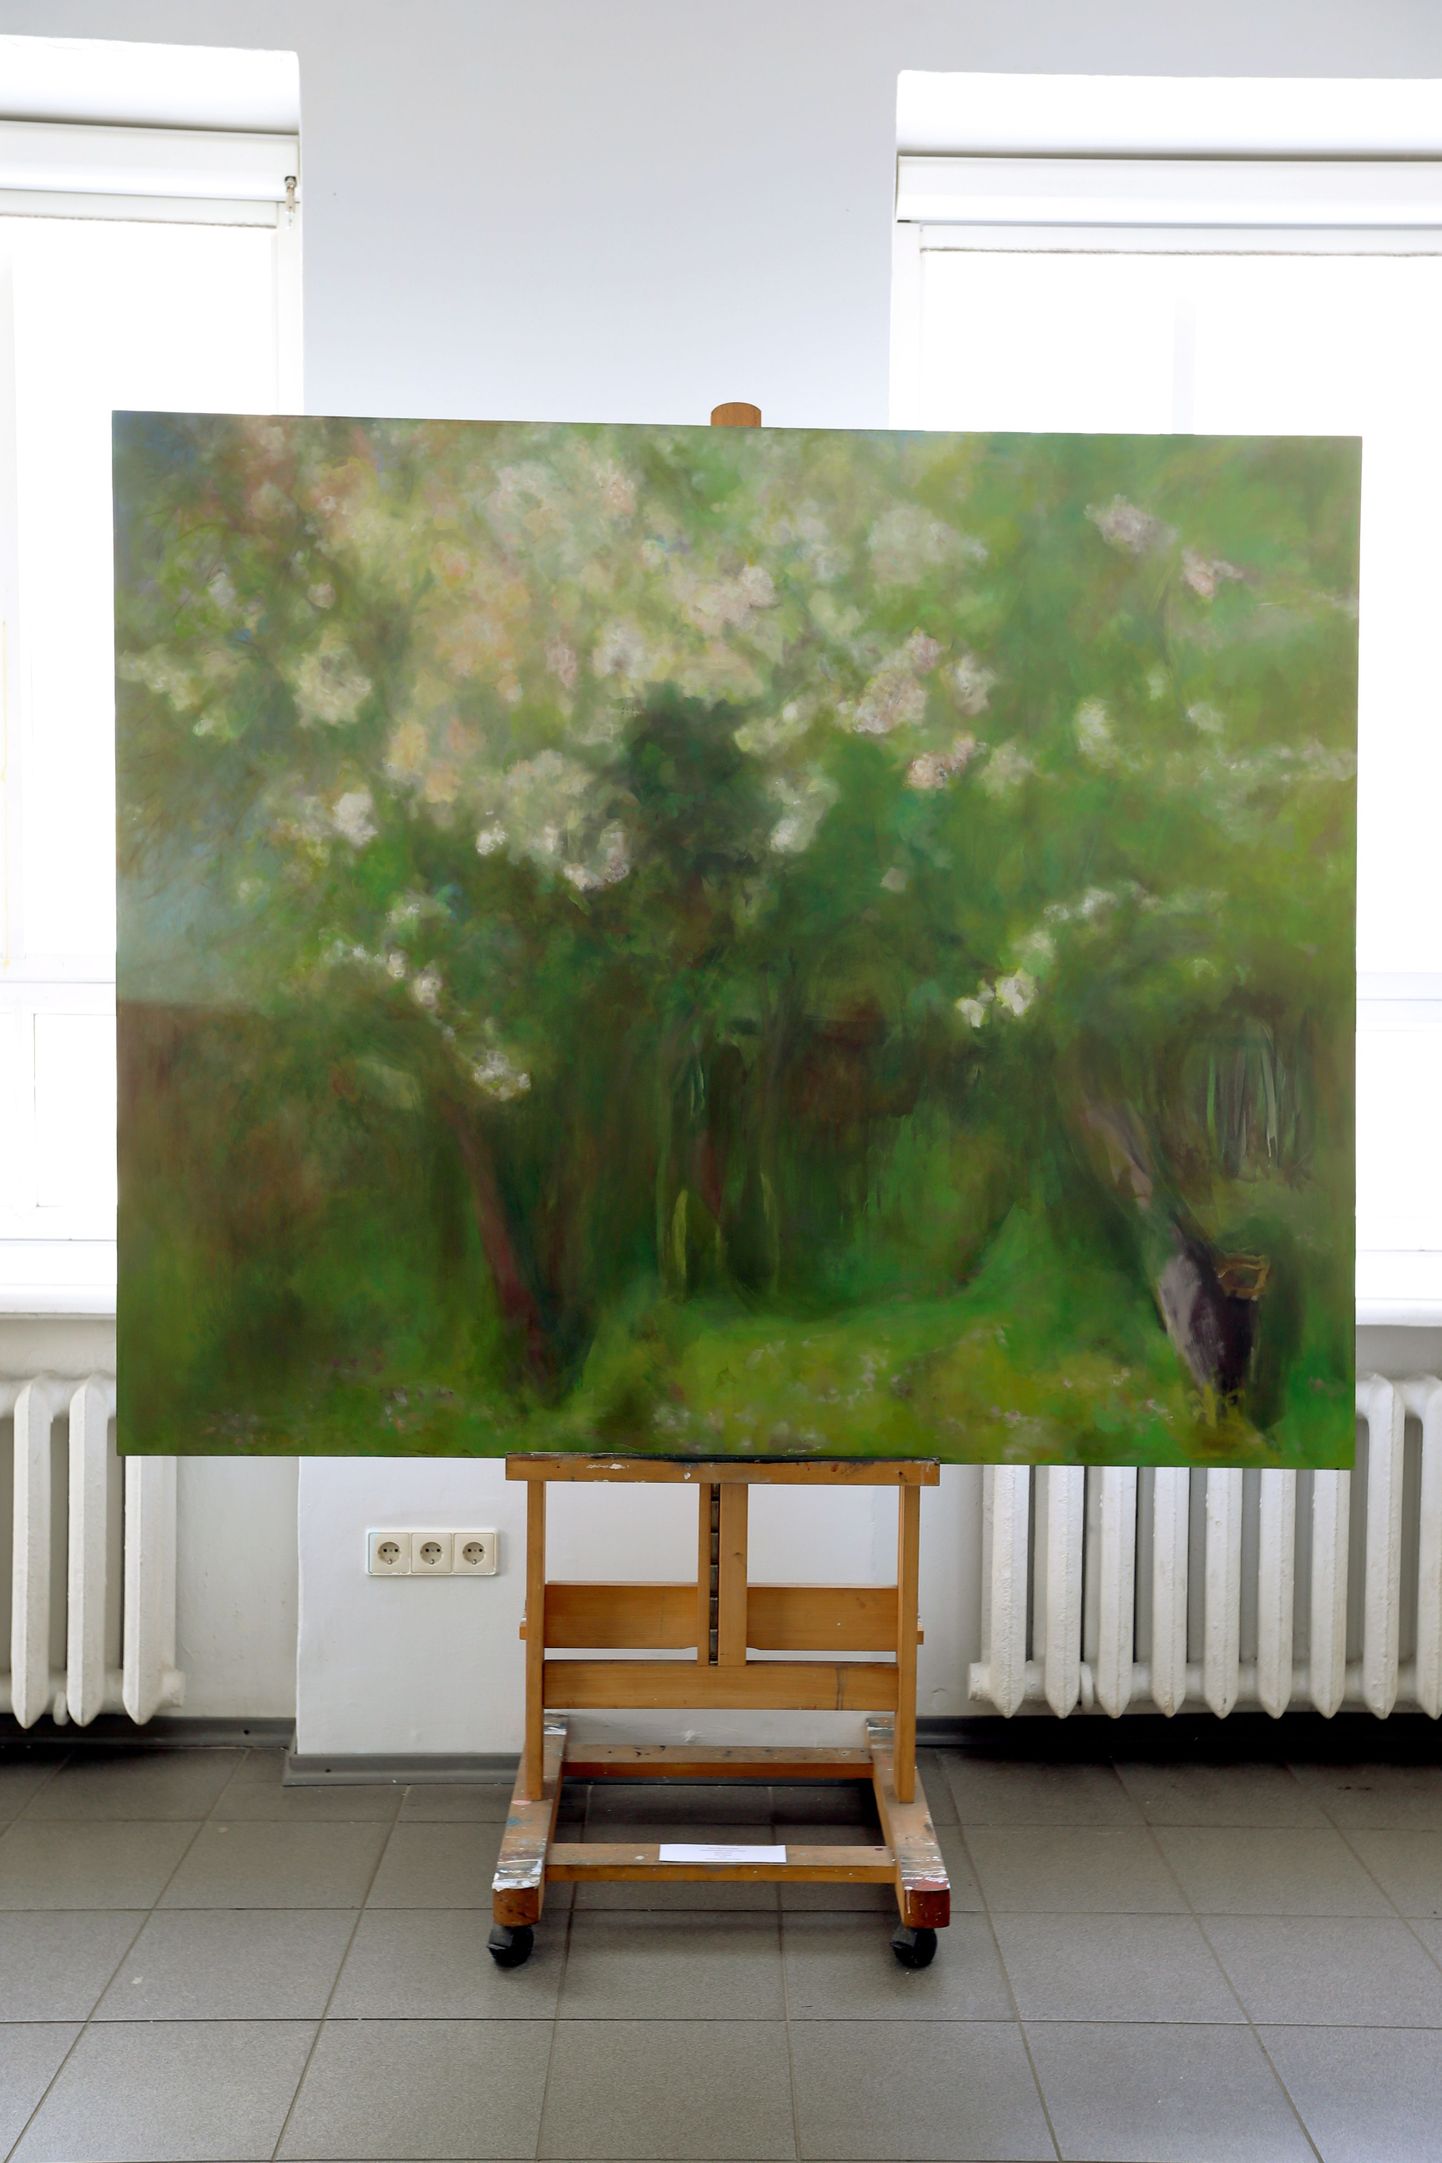 Helle Lõhmuse maal «Vana aed» (õli lõuendil, 2015) sarjast «Maastik mõne puuga» on välja pandud Tartu kunstimaja esimesel korrusel väikeses saalis.